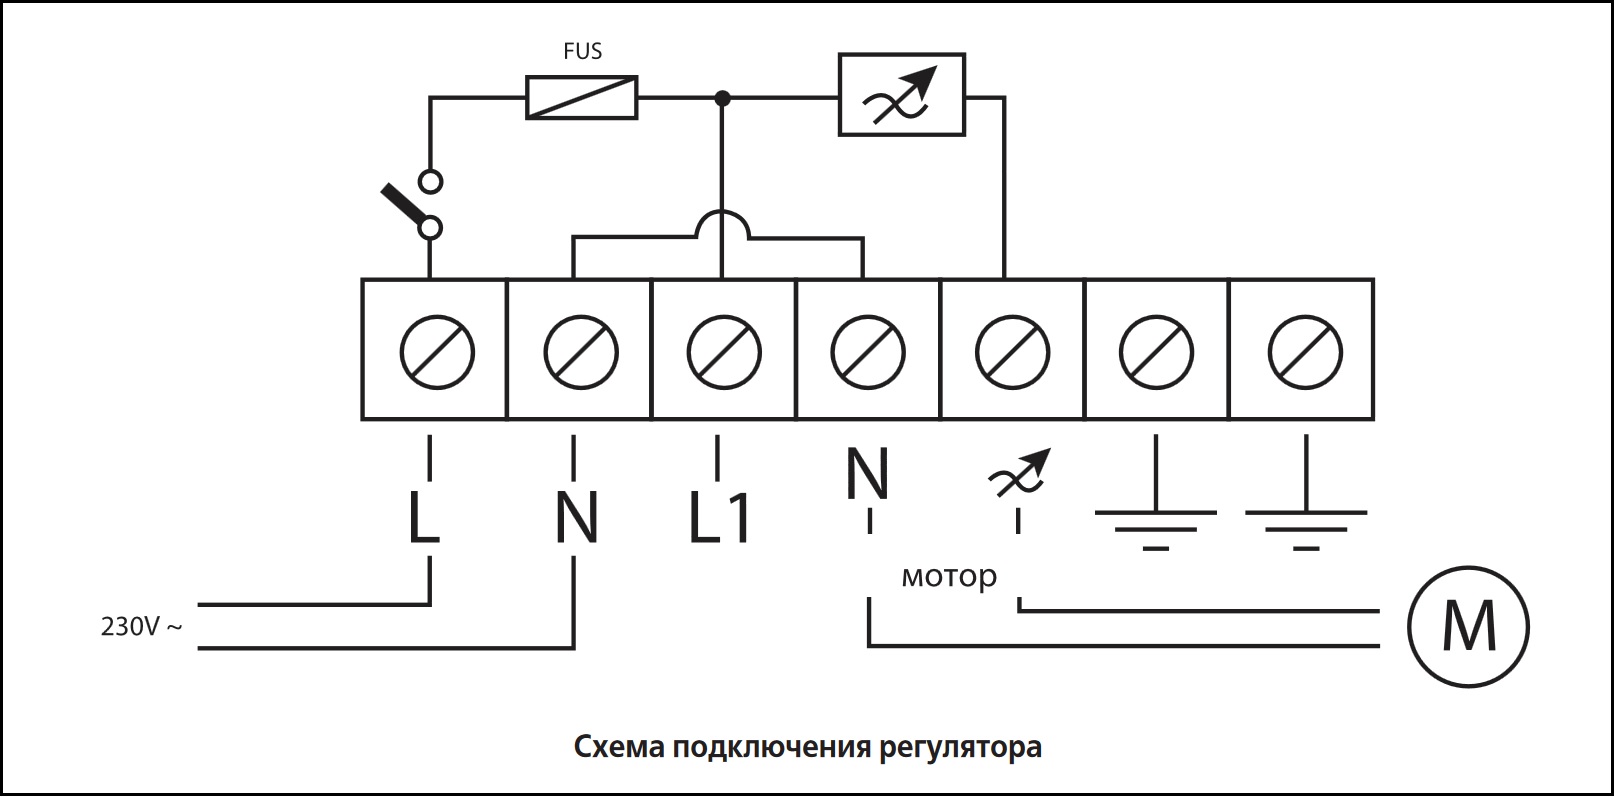 Схема подключения регулятора скорости ВЕНТС РС-3,0-Т